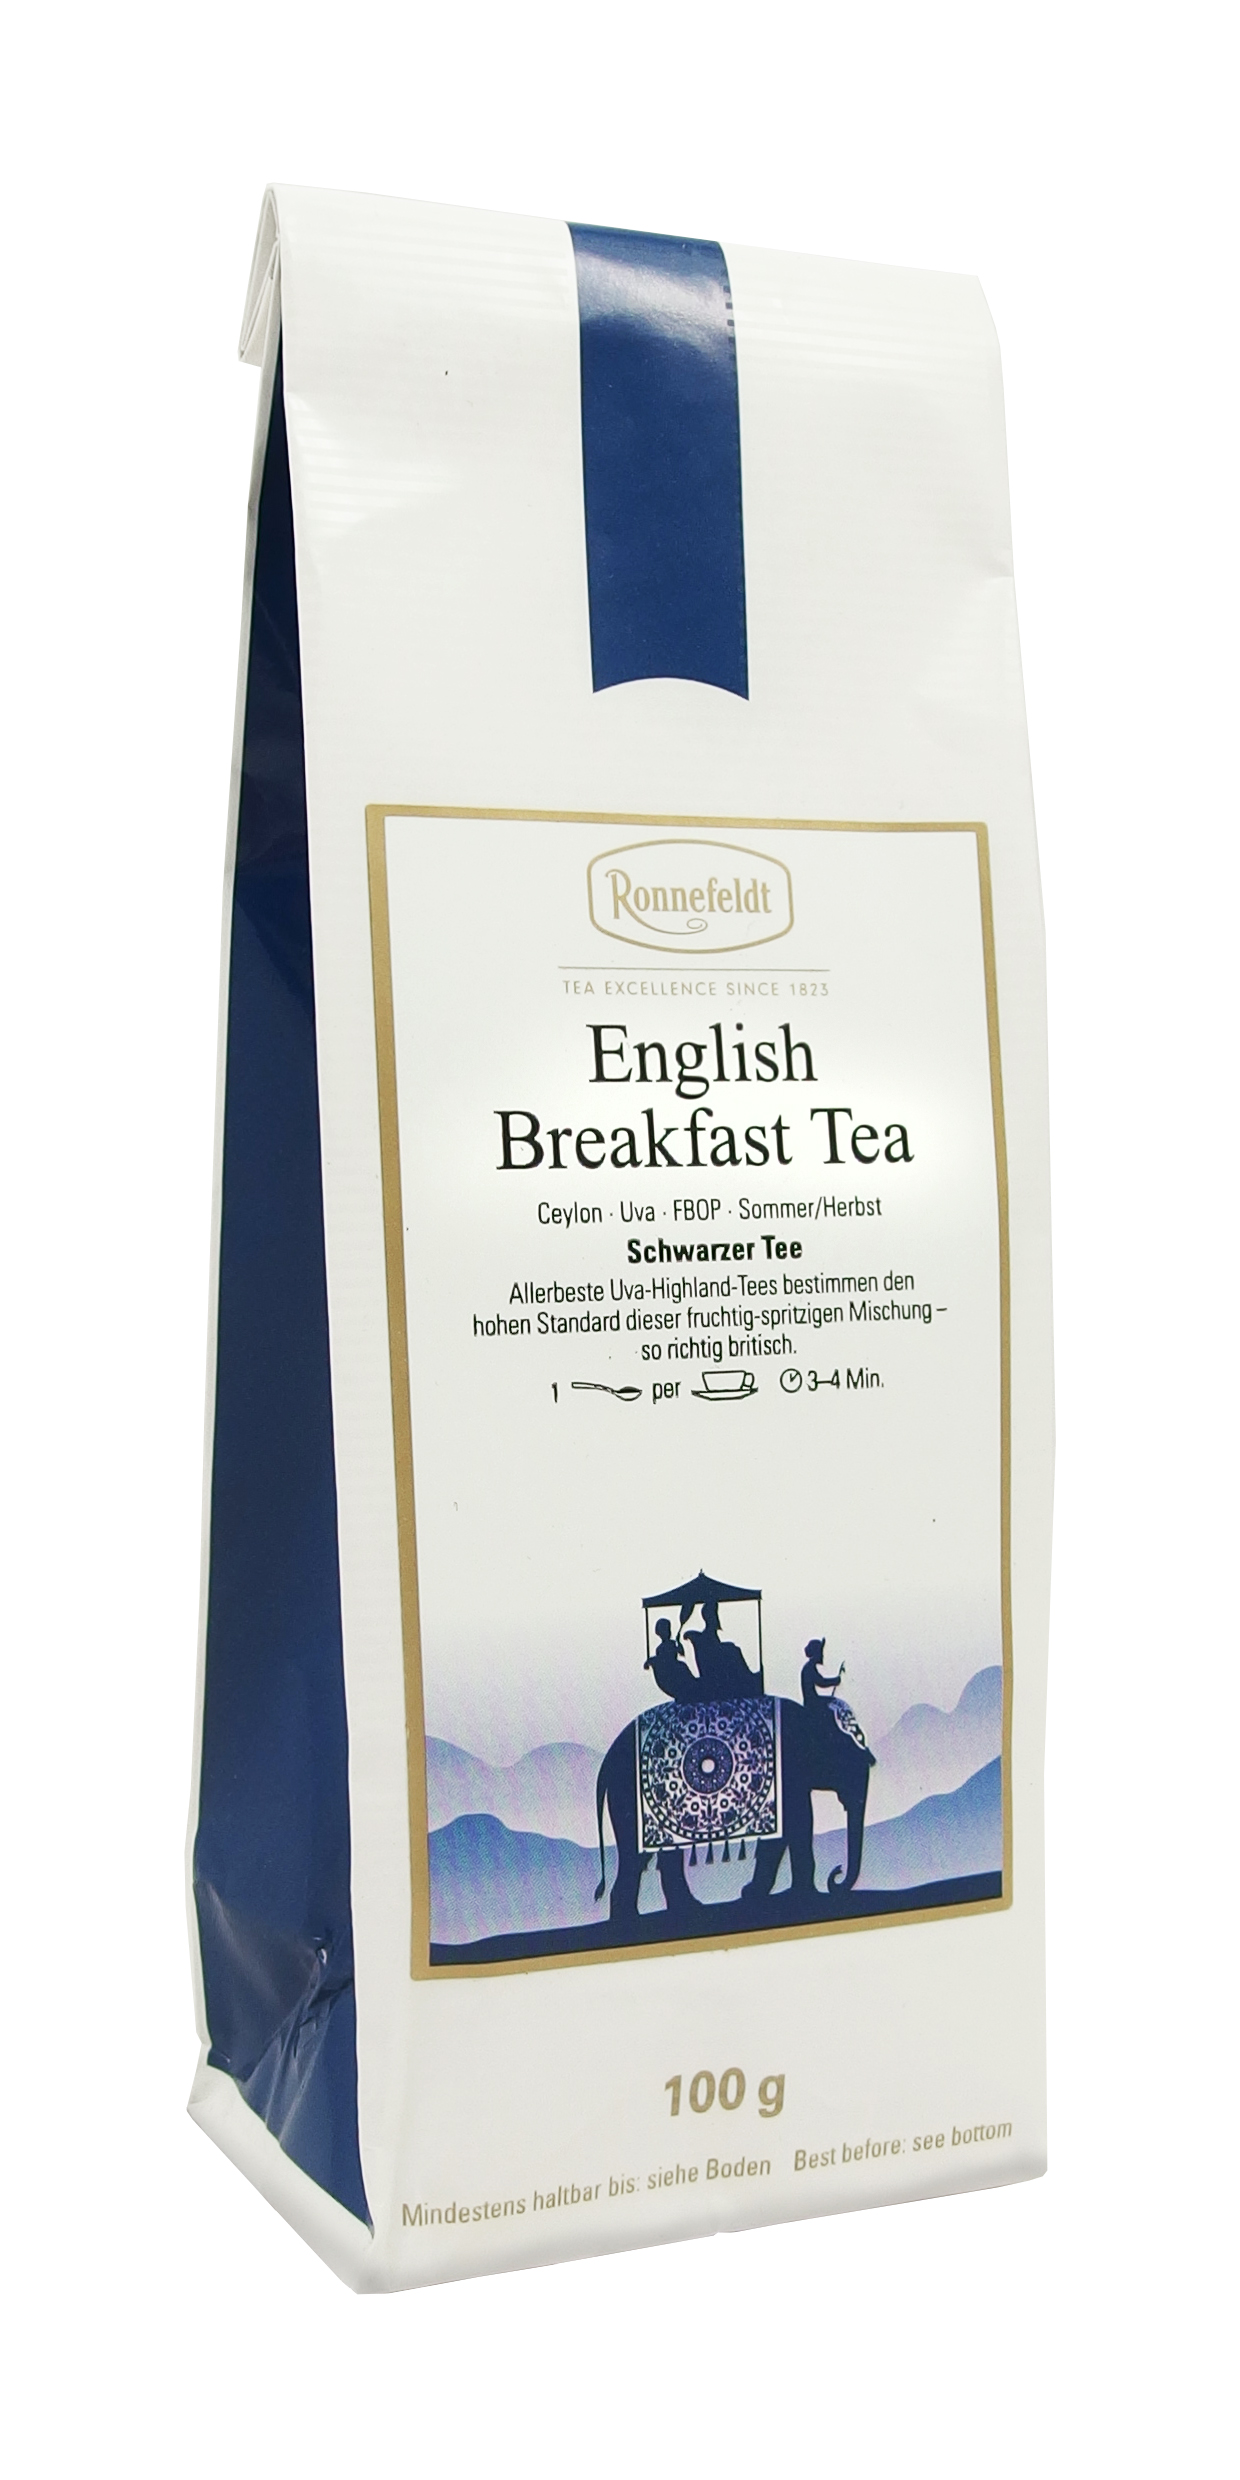 Ronnefeldt Tee - English Breakfast Tea